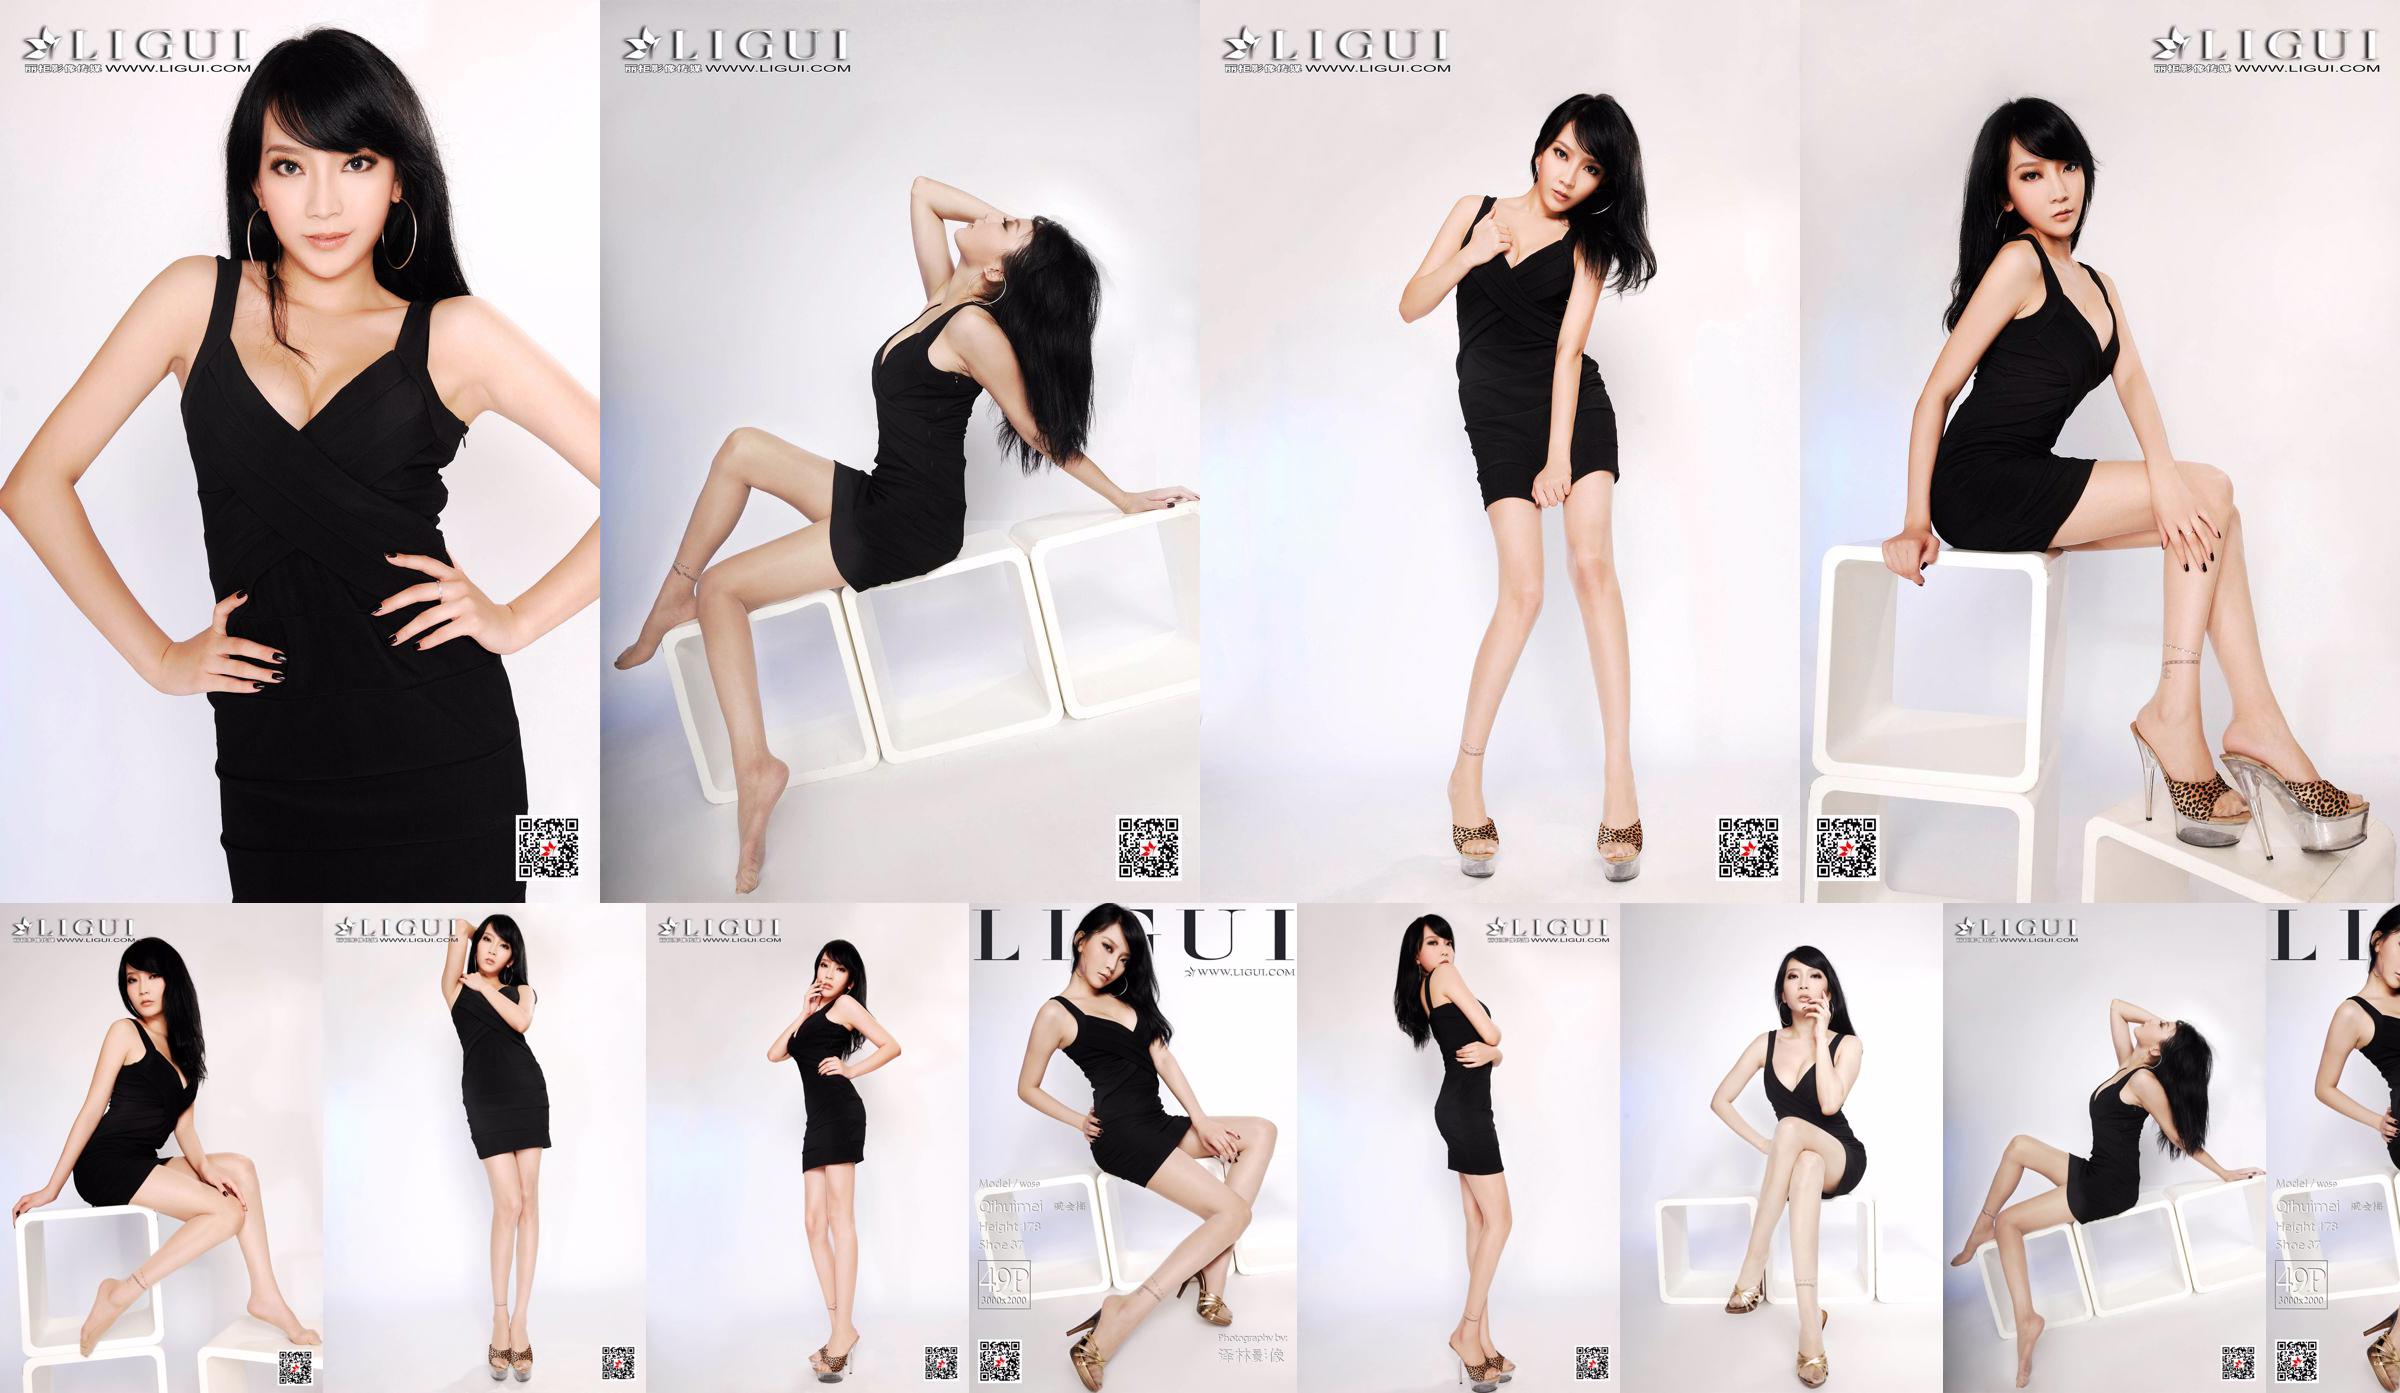 Người mẫu Qi Huimei "Chụp chân heo trong studio" [丽 柜 Ligui] No.61380c Trang 3